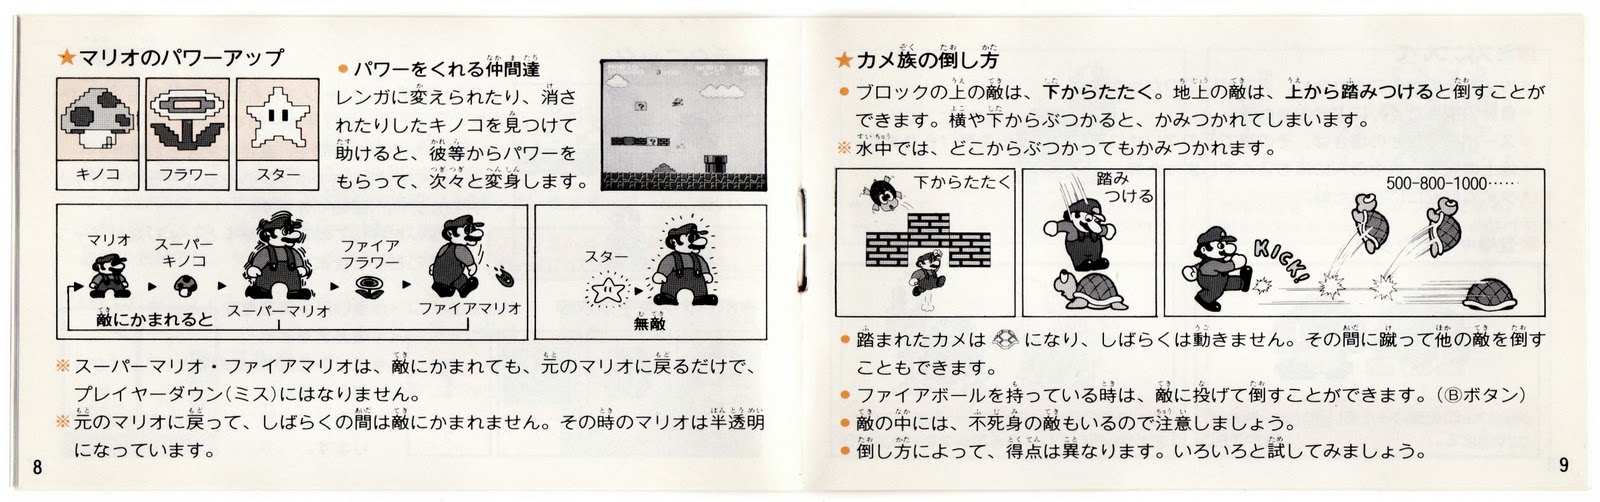 The Gay Gamer: Manual Stimulation: Super Mario Bros. (Famicom)